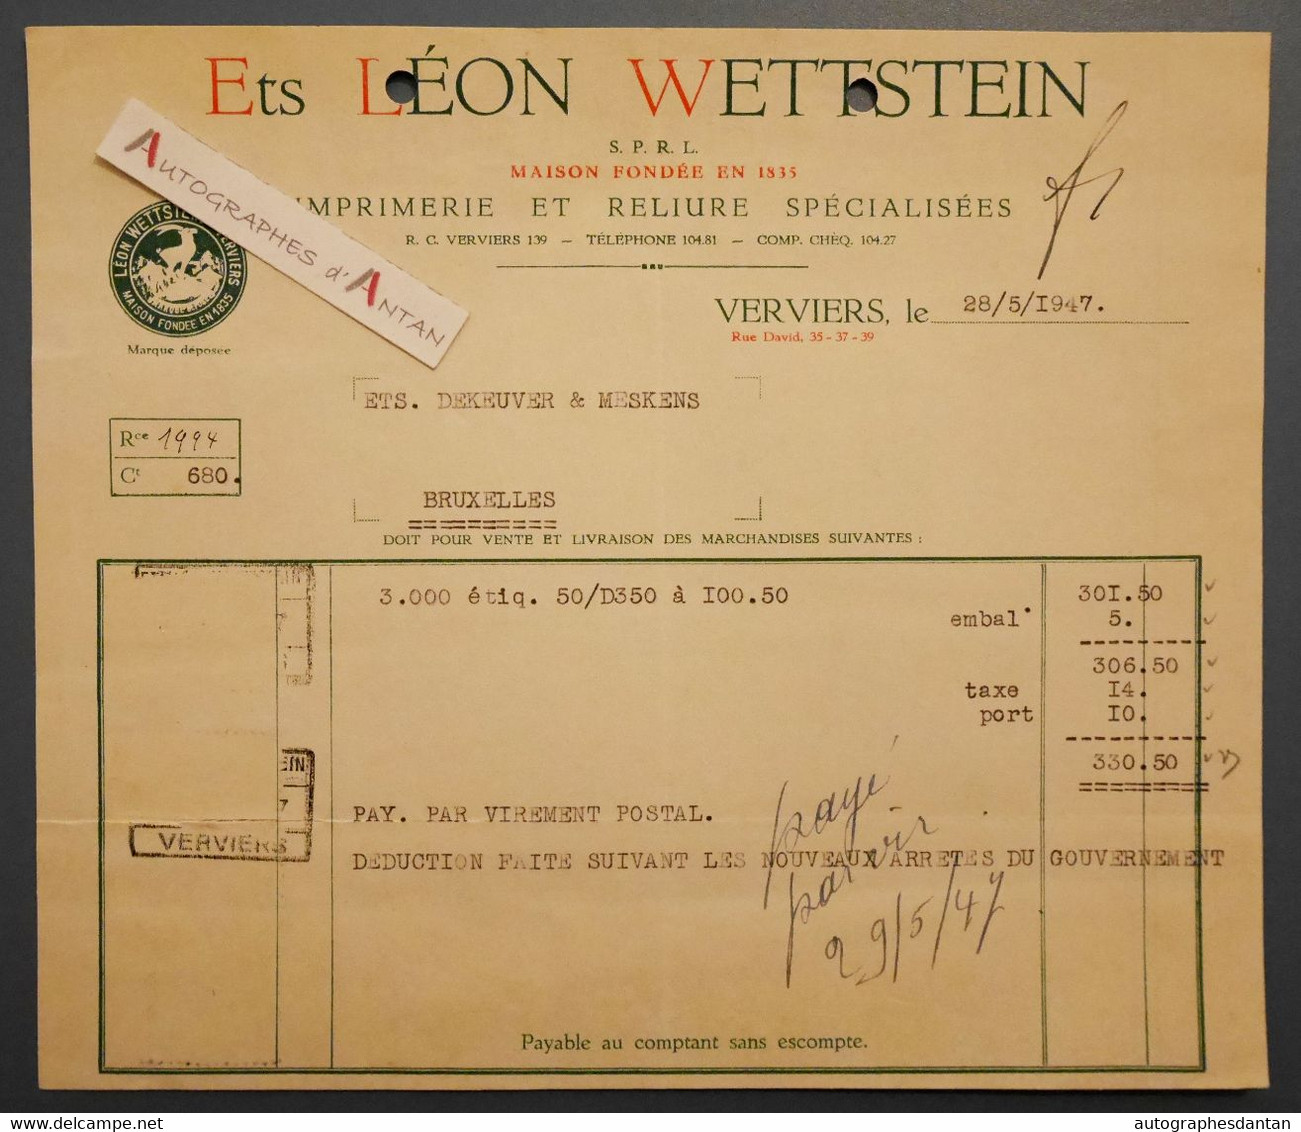 Léon WETTSTEIN Imprimerie & Reliure - VERVIERS - Facture 1947 > Ets Dekeuver Et Meskens - Belgique - Imprimerie & Papeterie